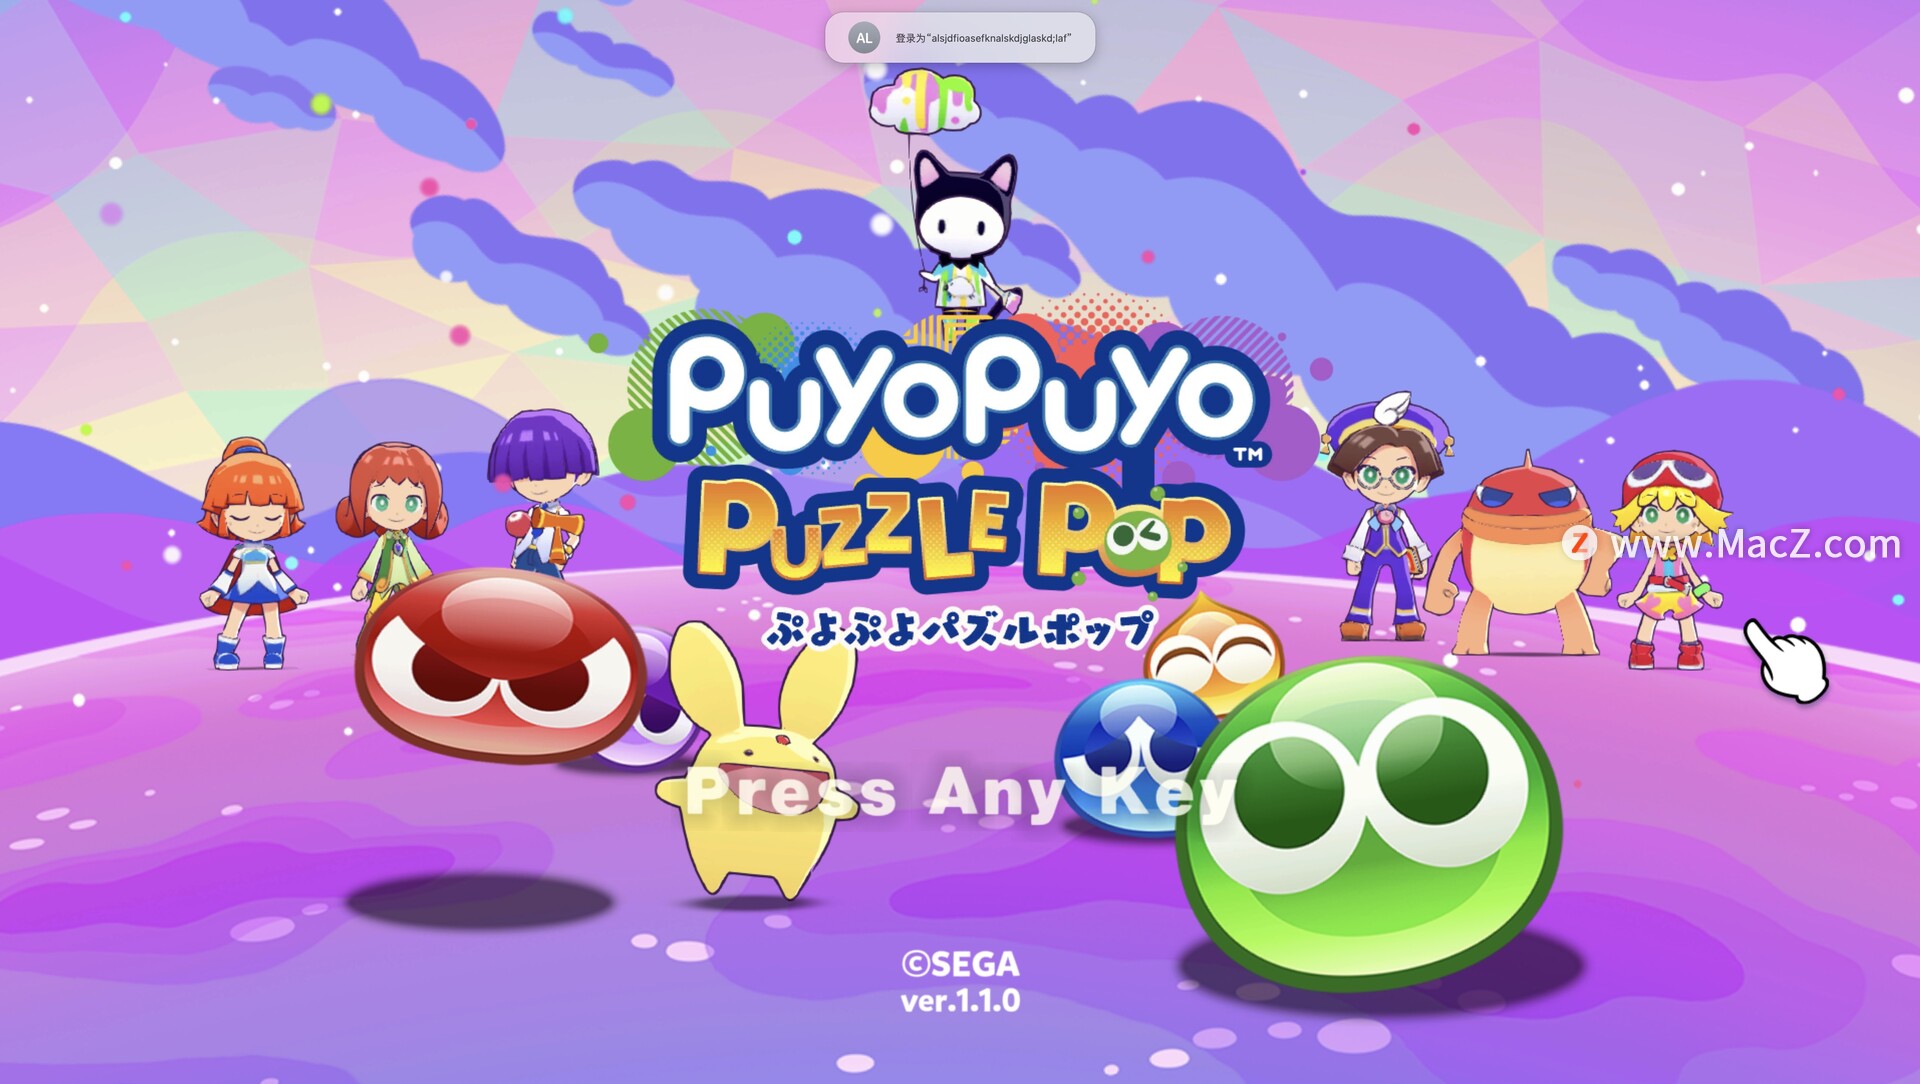 Puyo Puyo Puzzle Pop  for Mac(日式配对益智游戏)